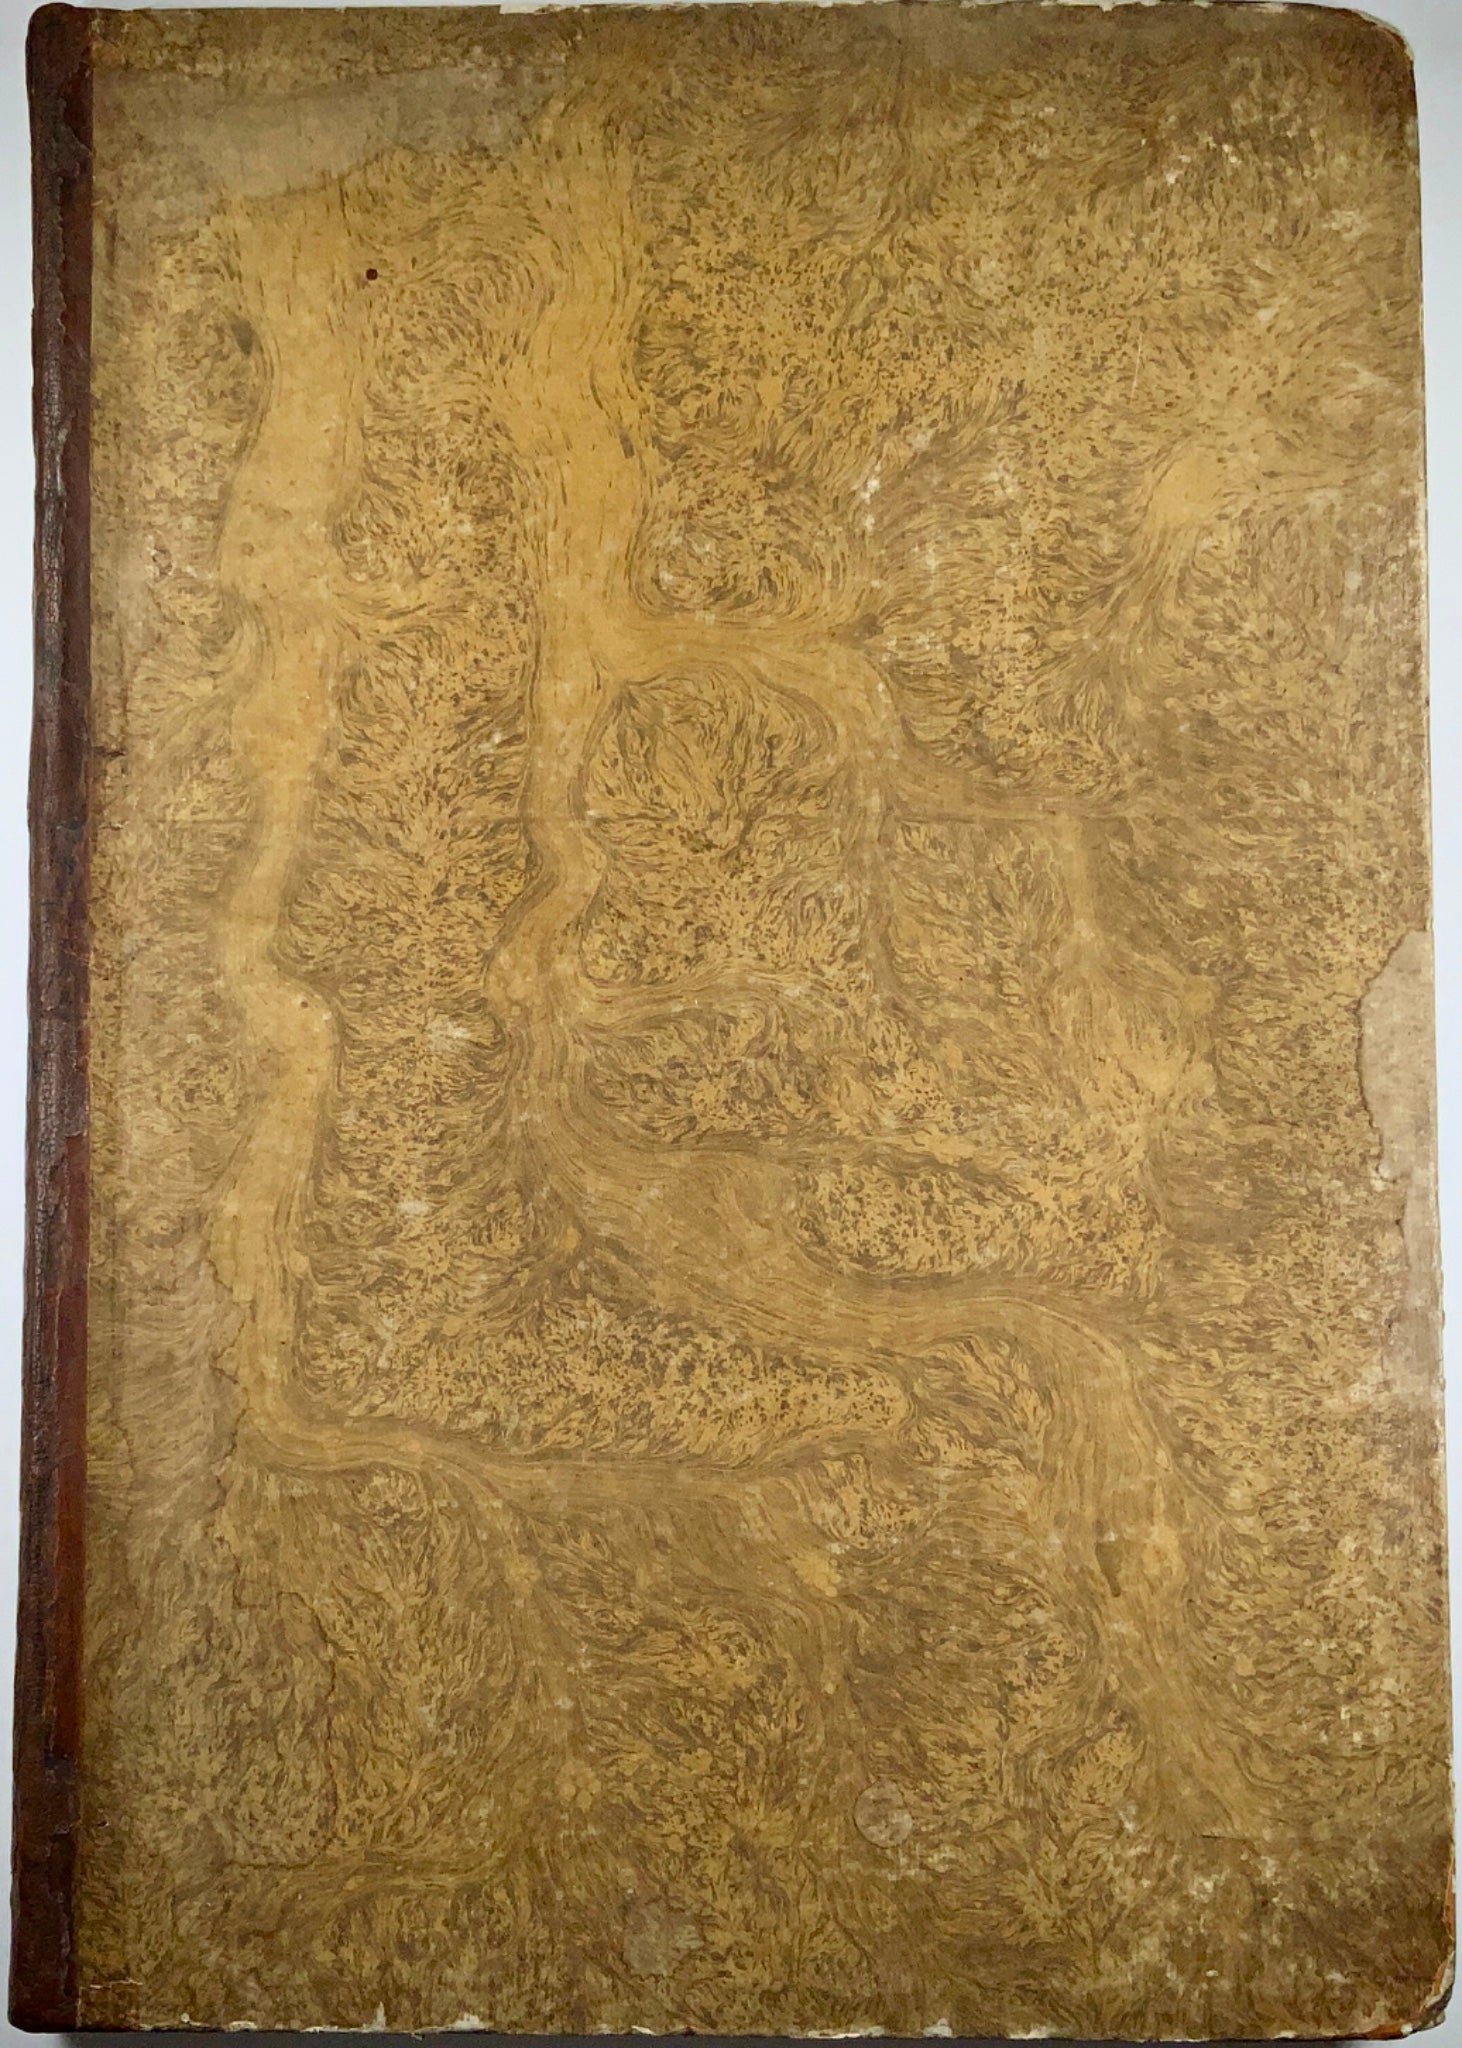 1823 Sanmicheli, M. - Ronzani, F. Le fabbriche civili 63 large engravings - Book, Architecture